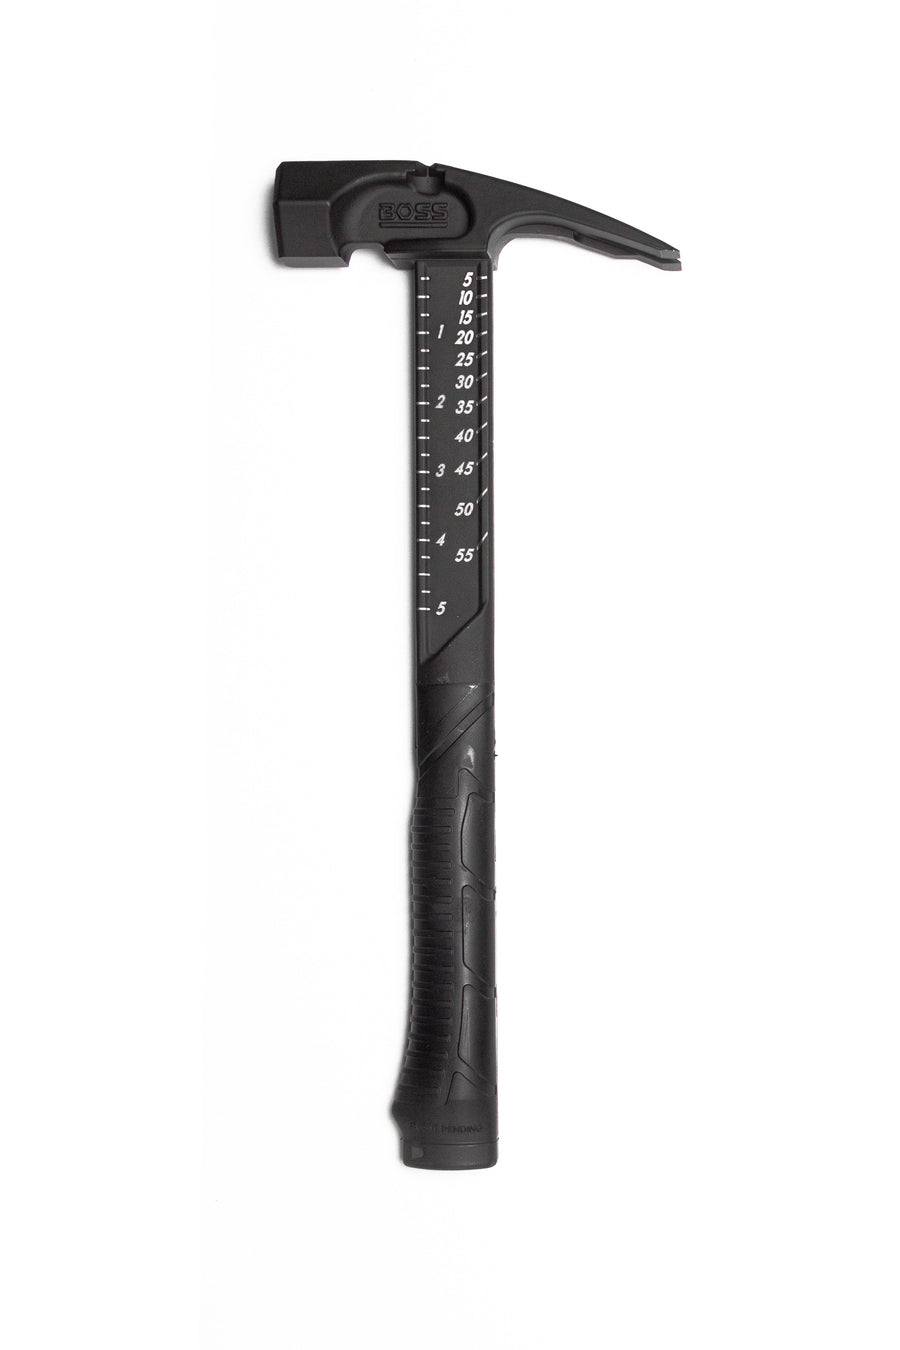 Pro Series Cerakote® Titanium Hammer Titanium Boss Hammer Co. 14 oz Smooth ARMOR BLACK